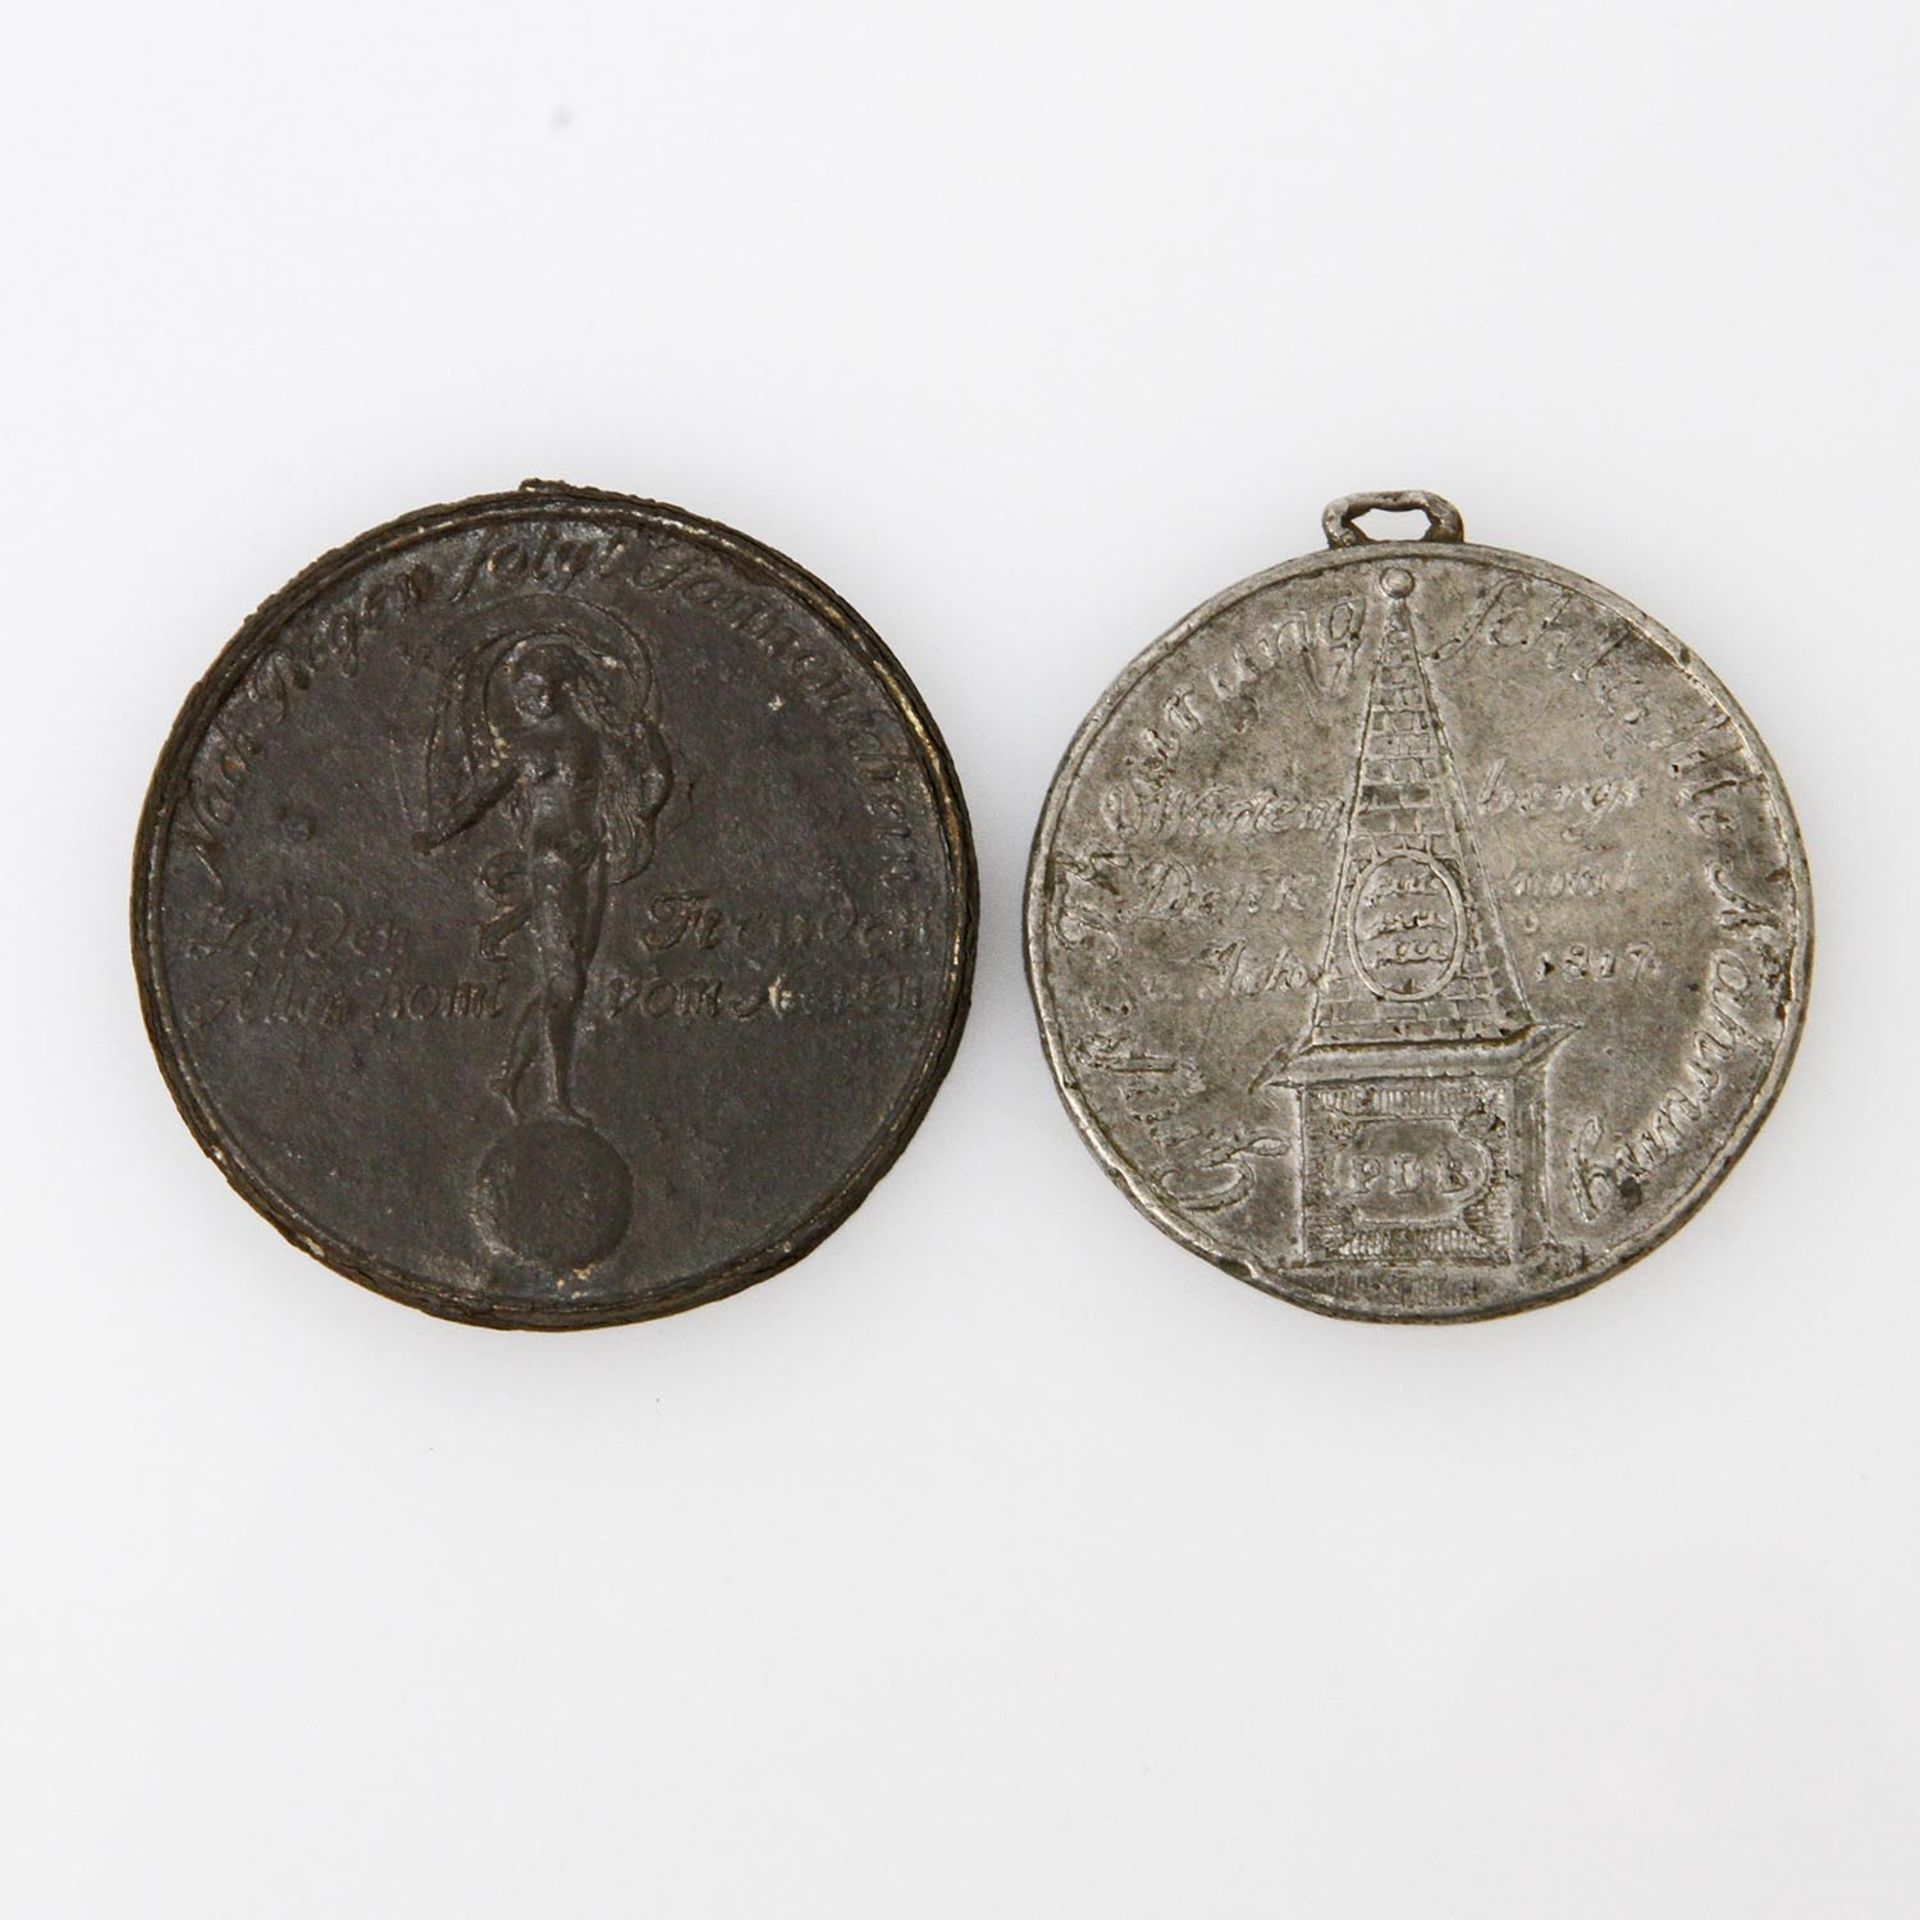 Württemberg / Stuttgart - Oktogonale Medaille 1913, von Mayer und Wilhelm, a.d. 25. Württembergische